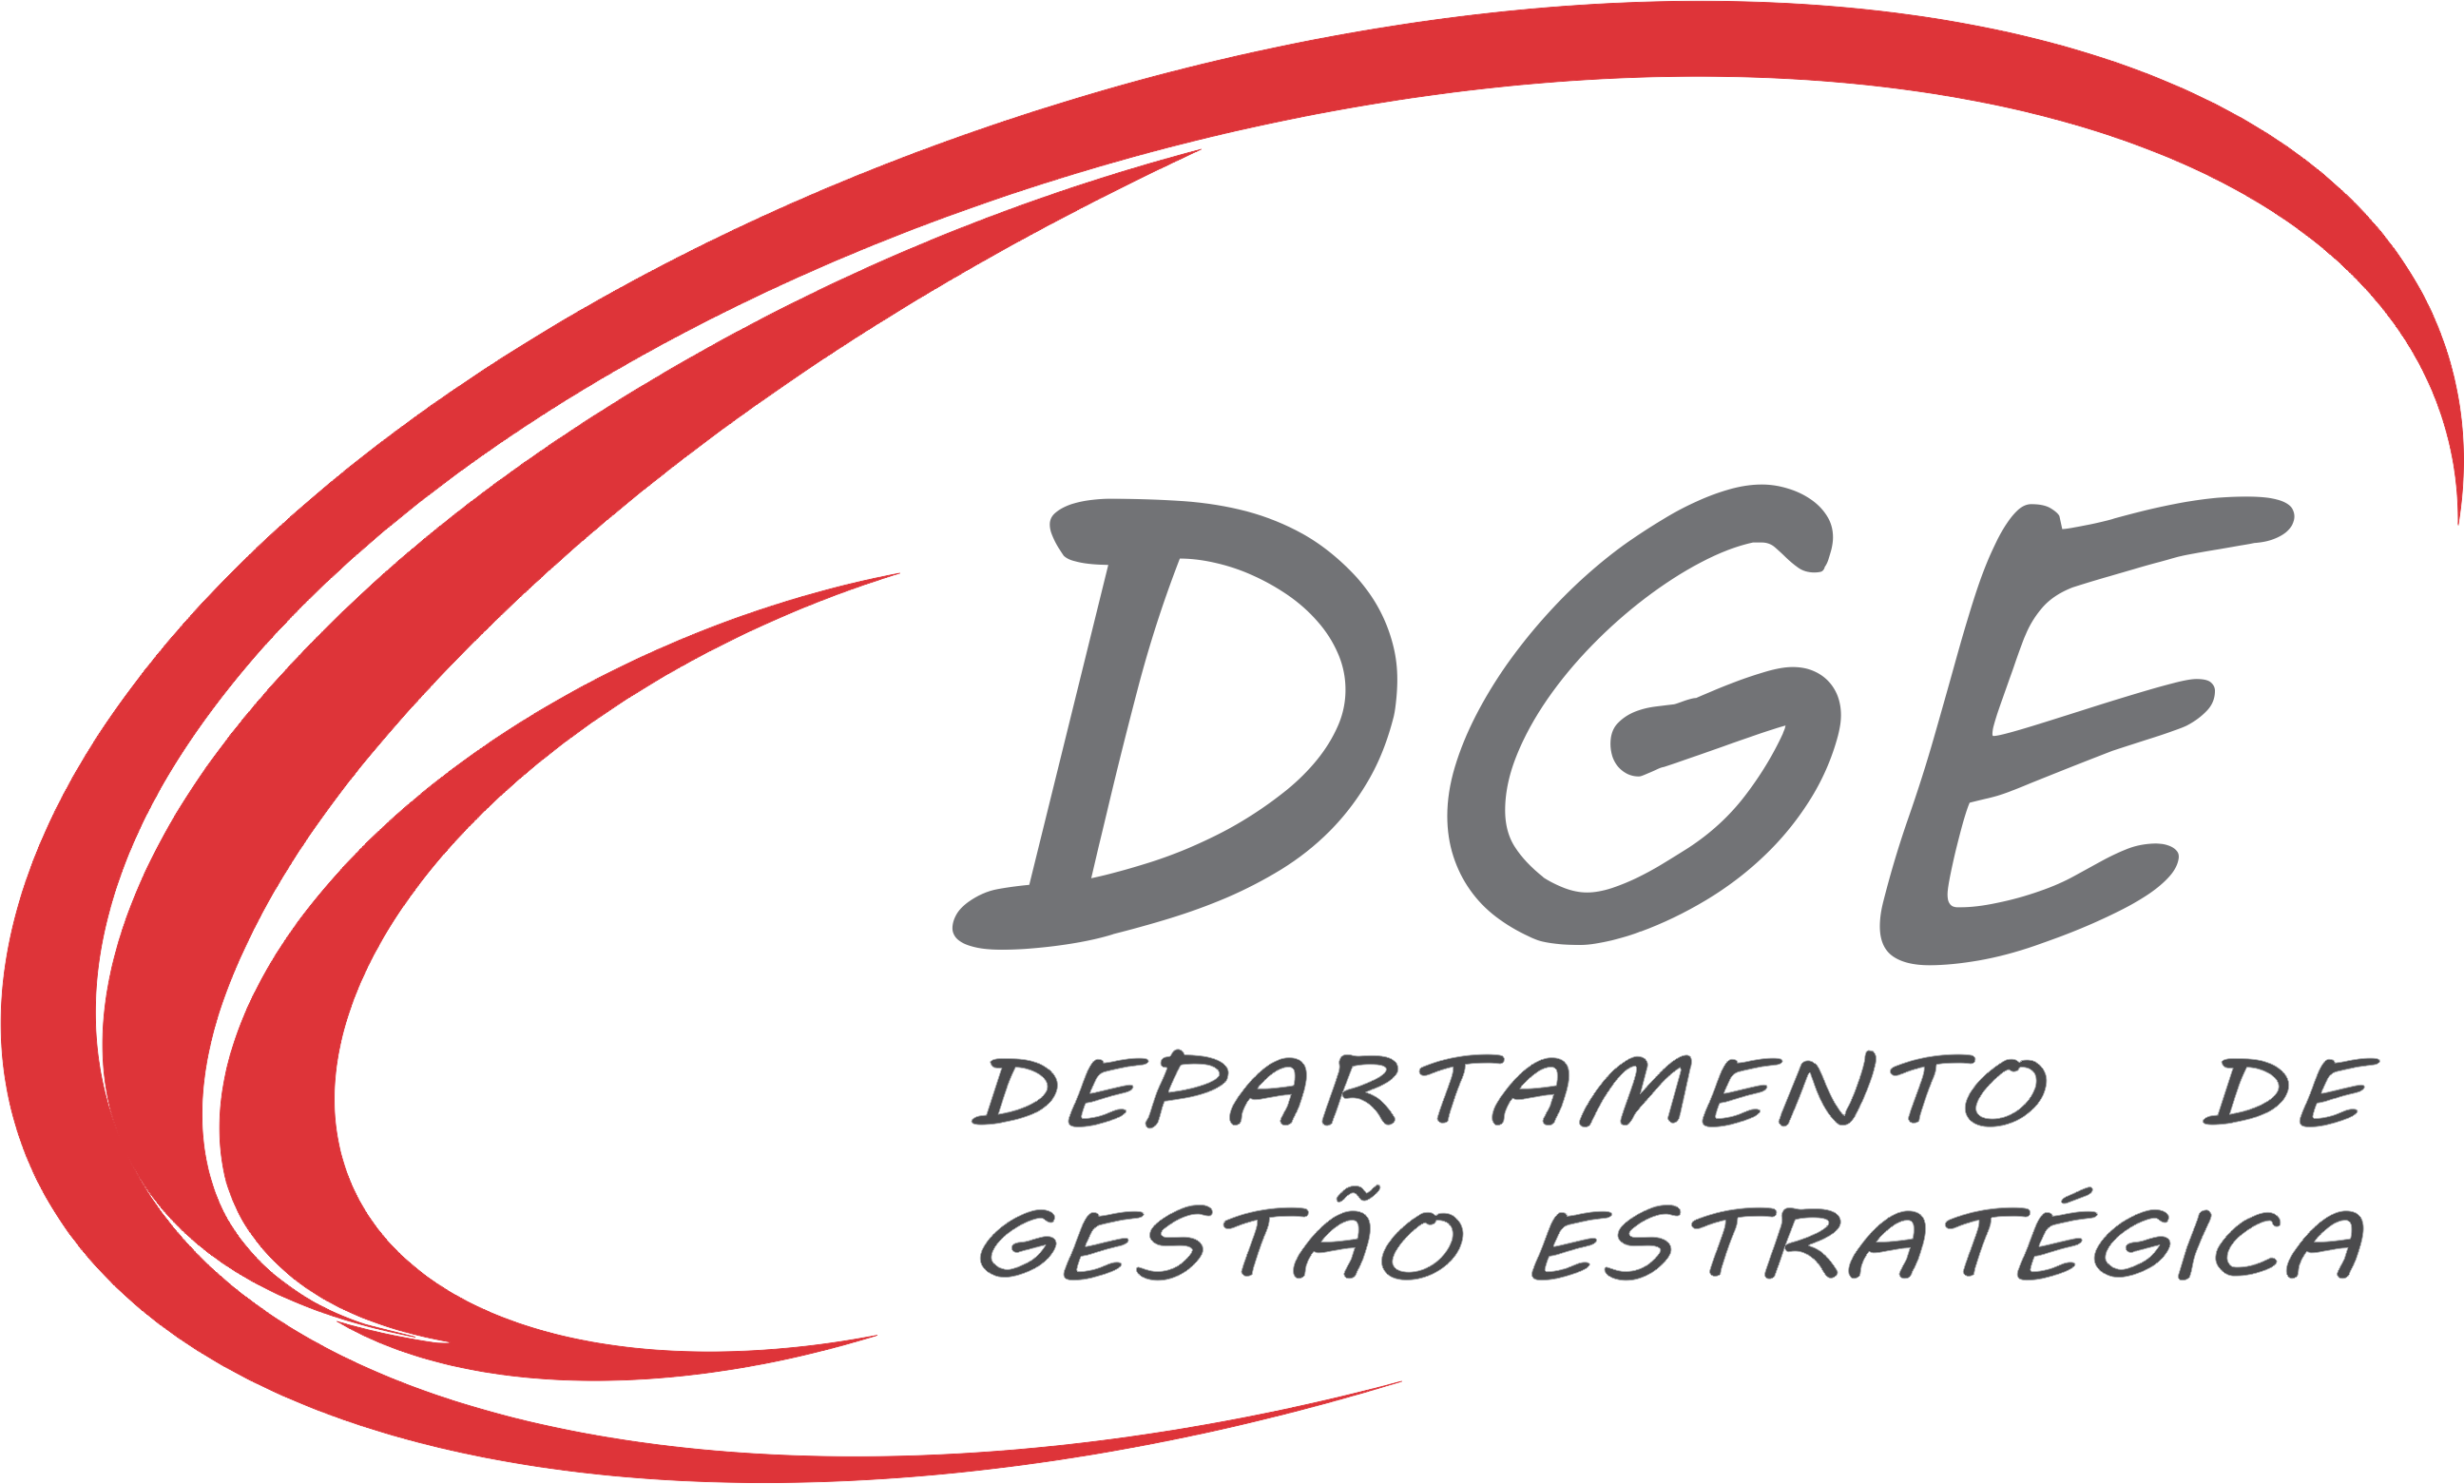 DGE logo agosto 2018